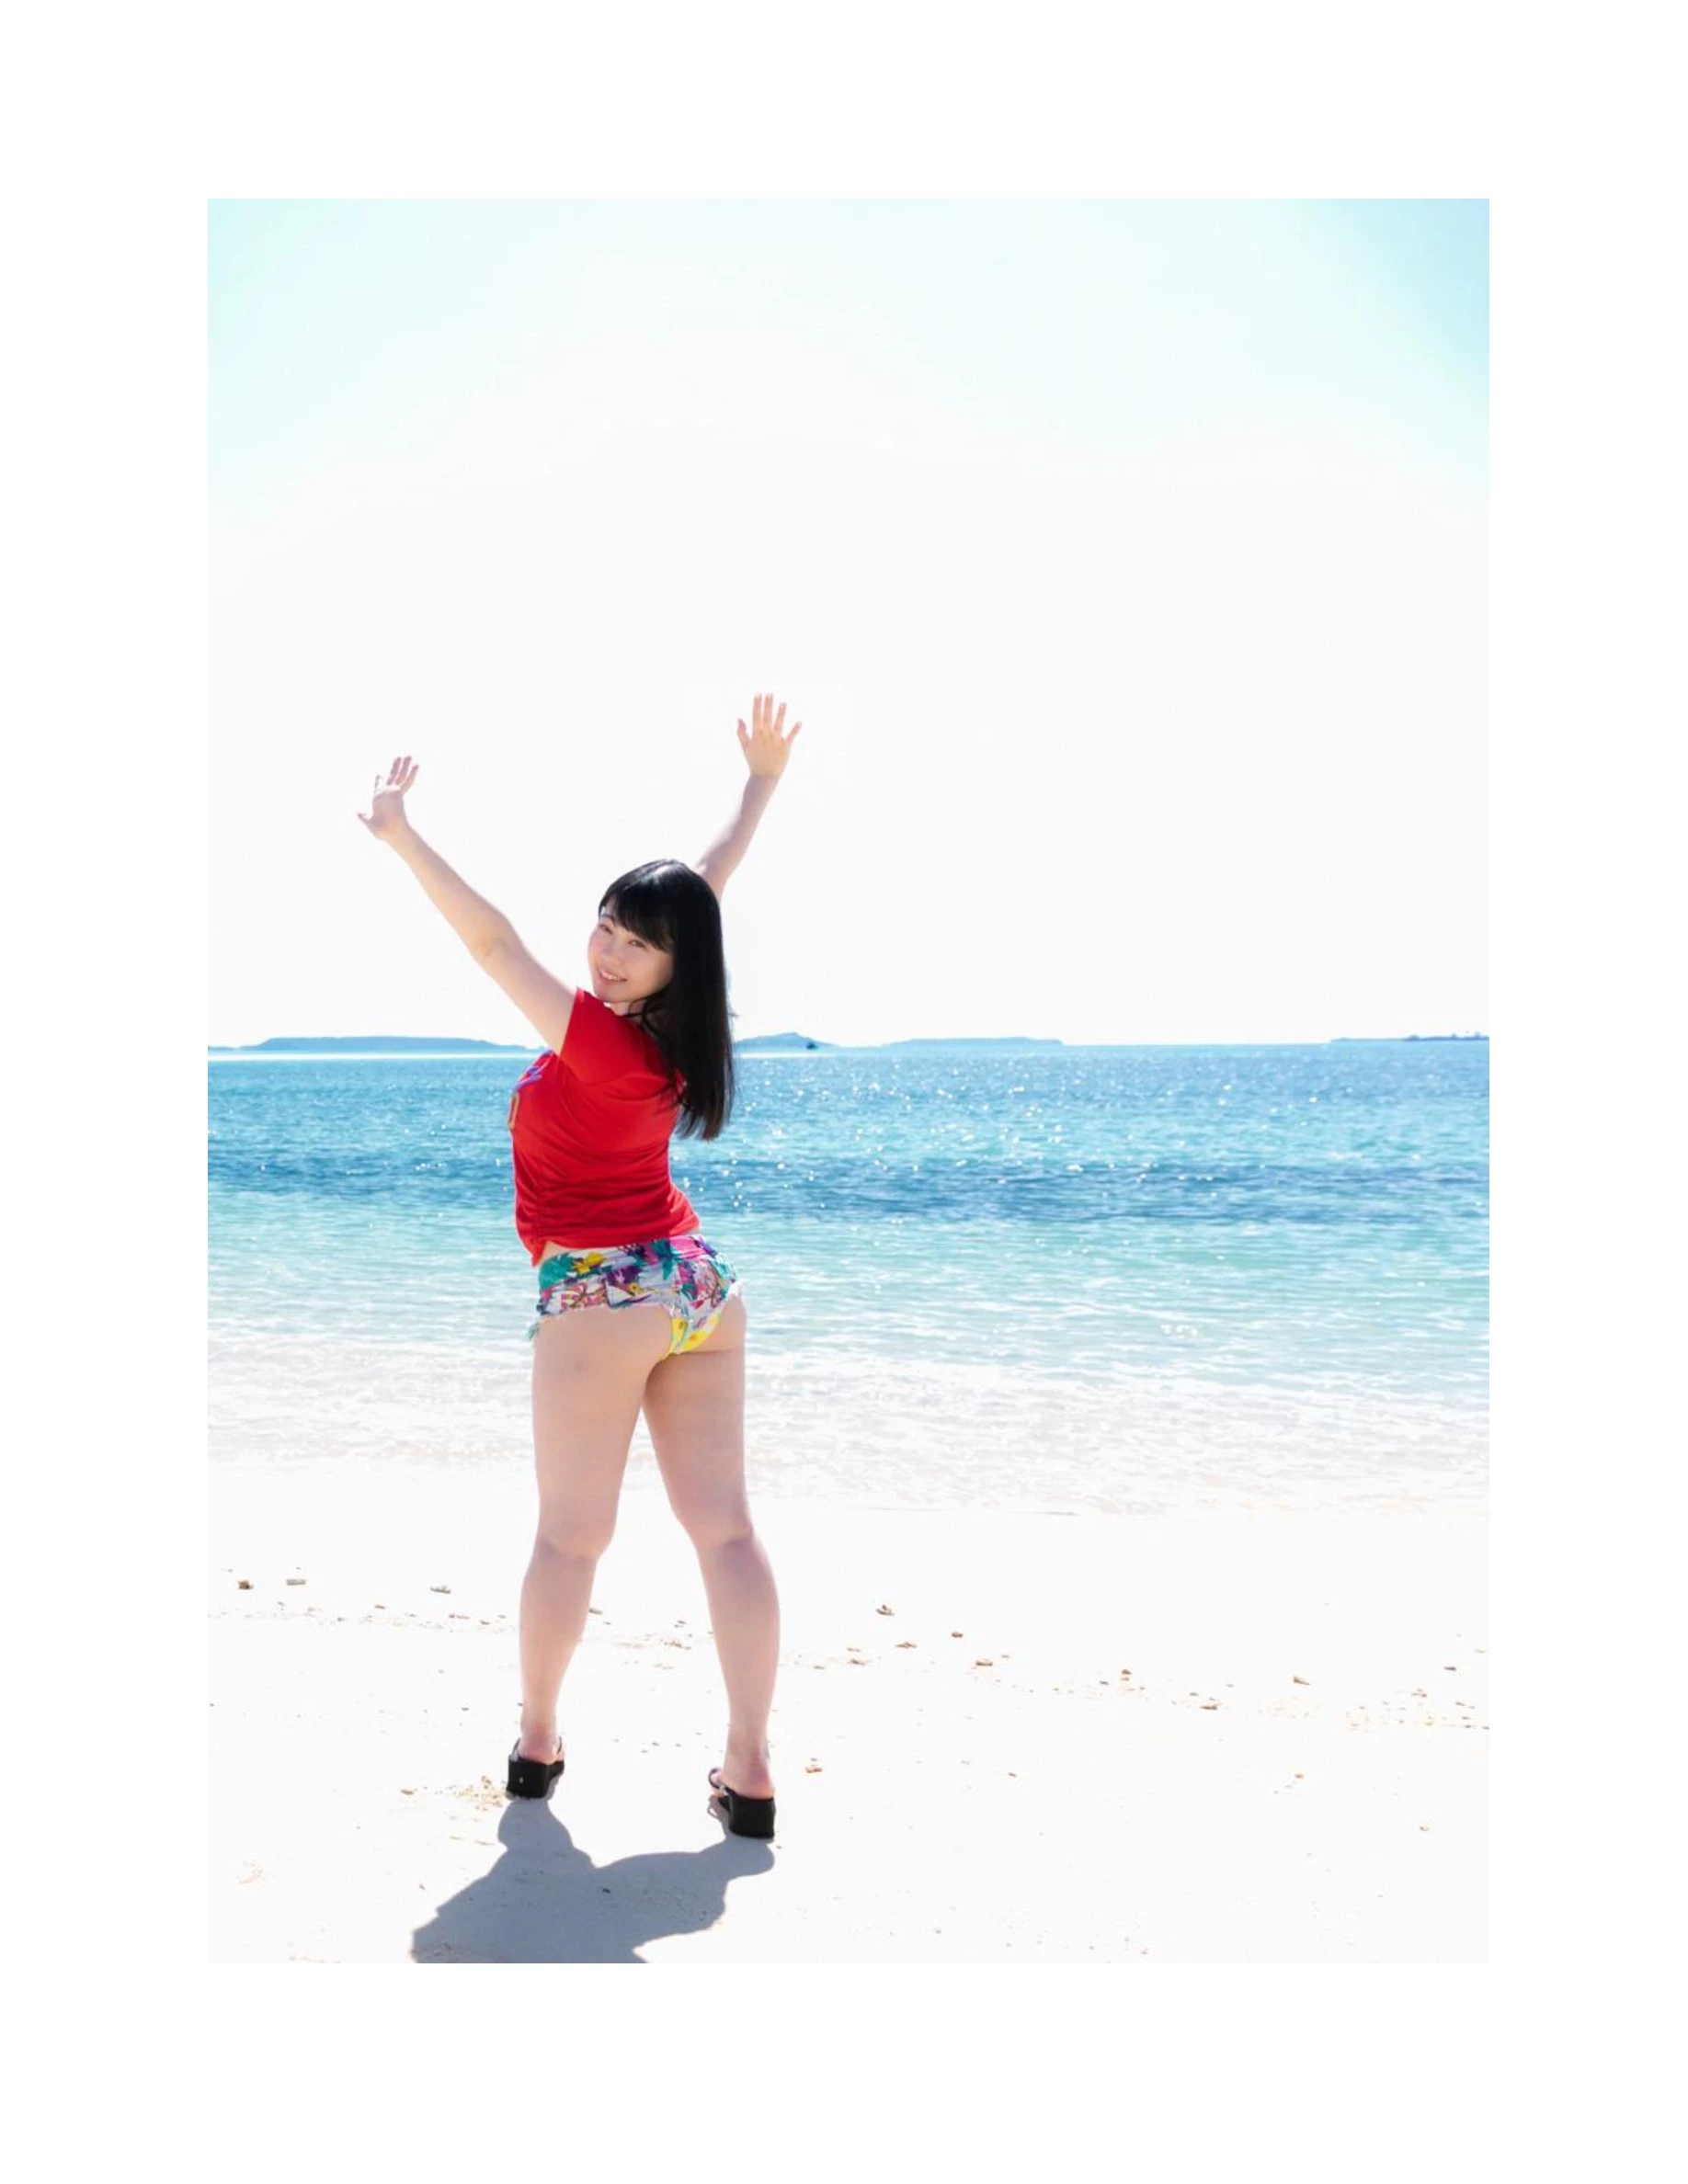 伊川愛梨 卒業旅行 夏 寫真集 J罩杯偶像美少女傳説-365